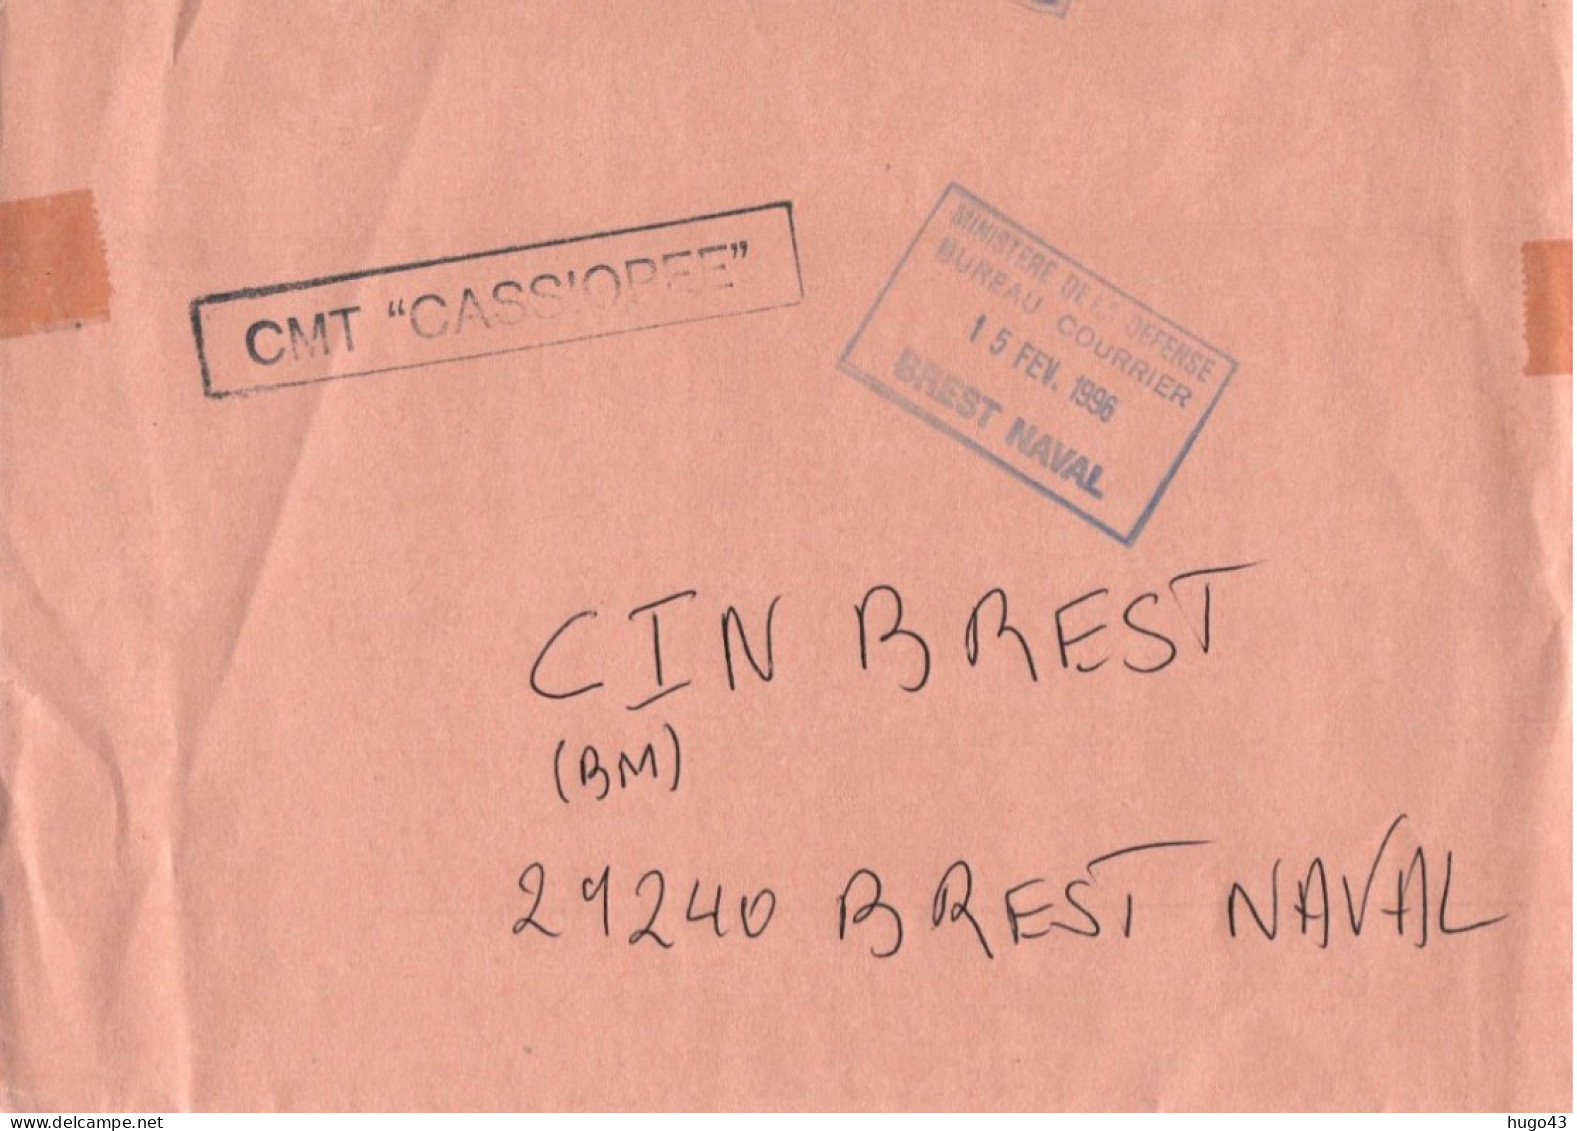 ENVELOPPE  AVEC CACHET CMT CASSIOPEE LE 15/02/1996 BREST NAVAL - Naval Post